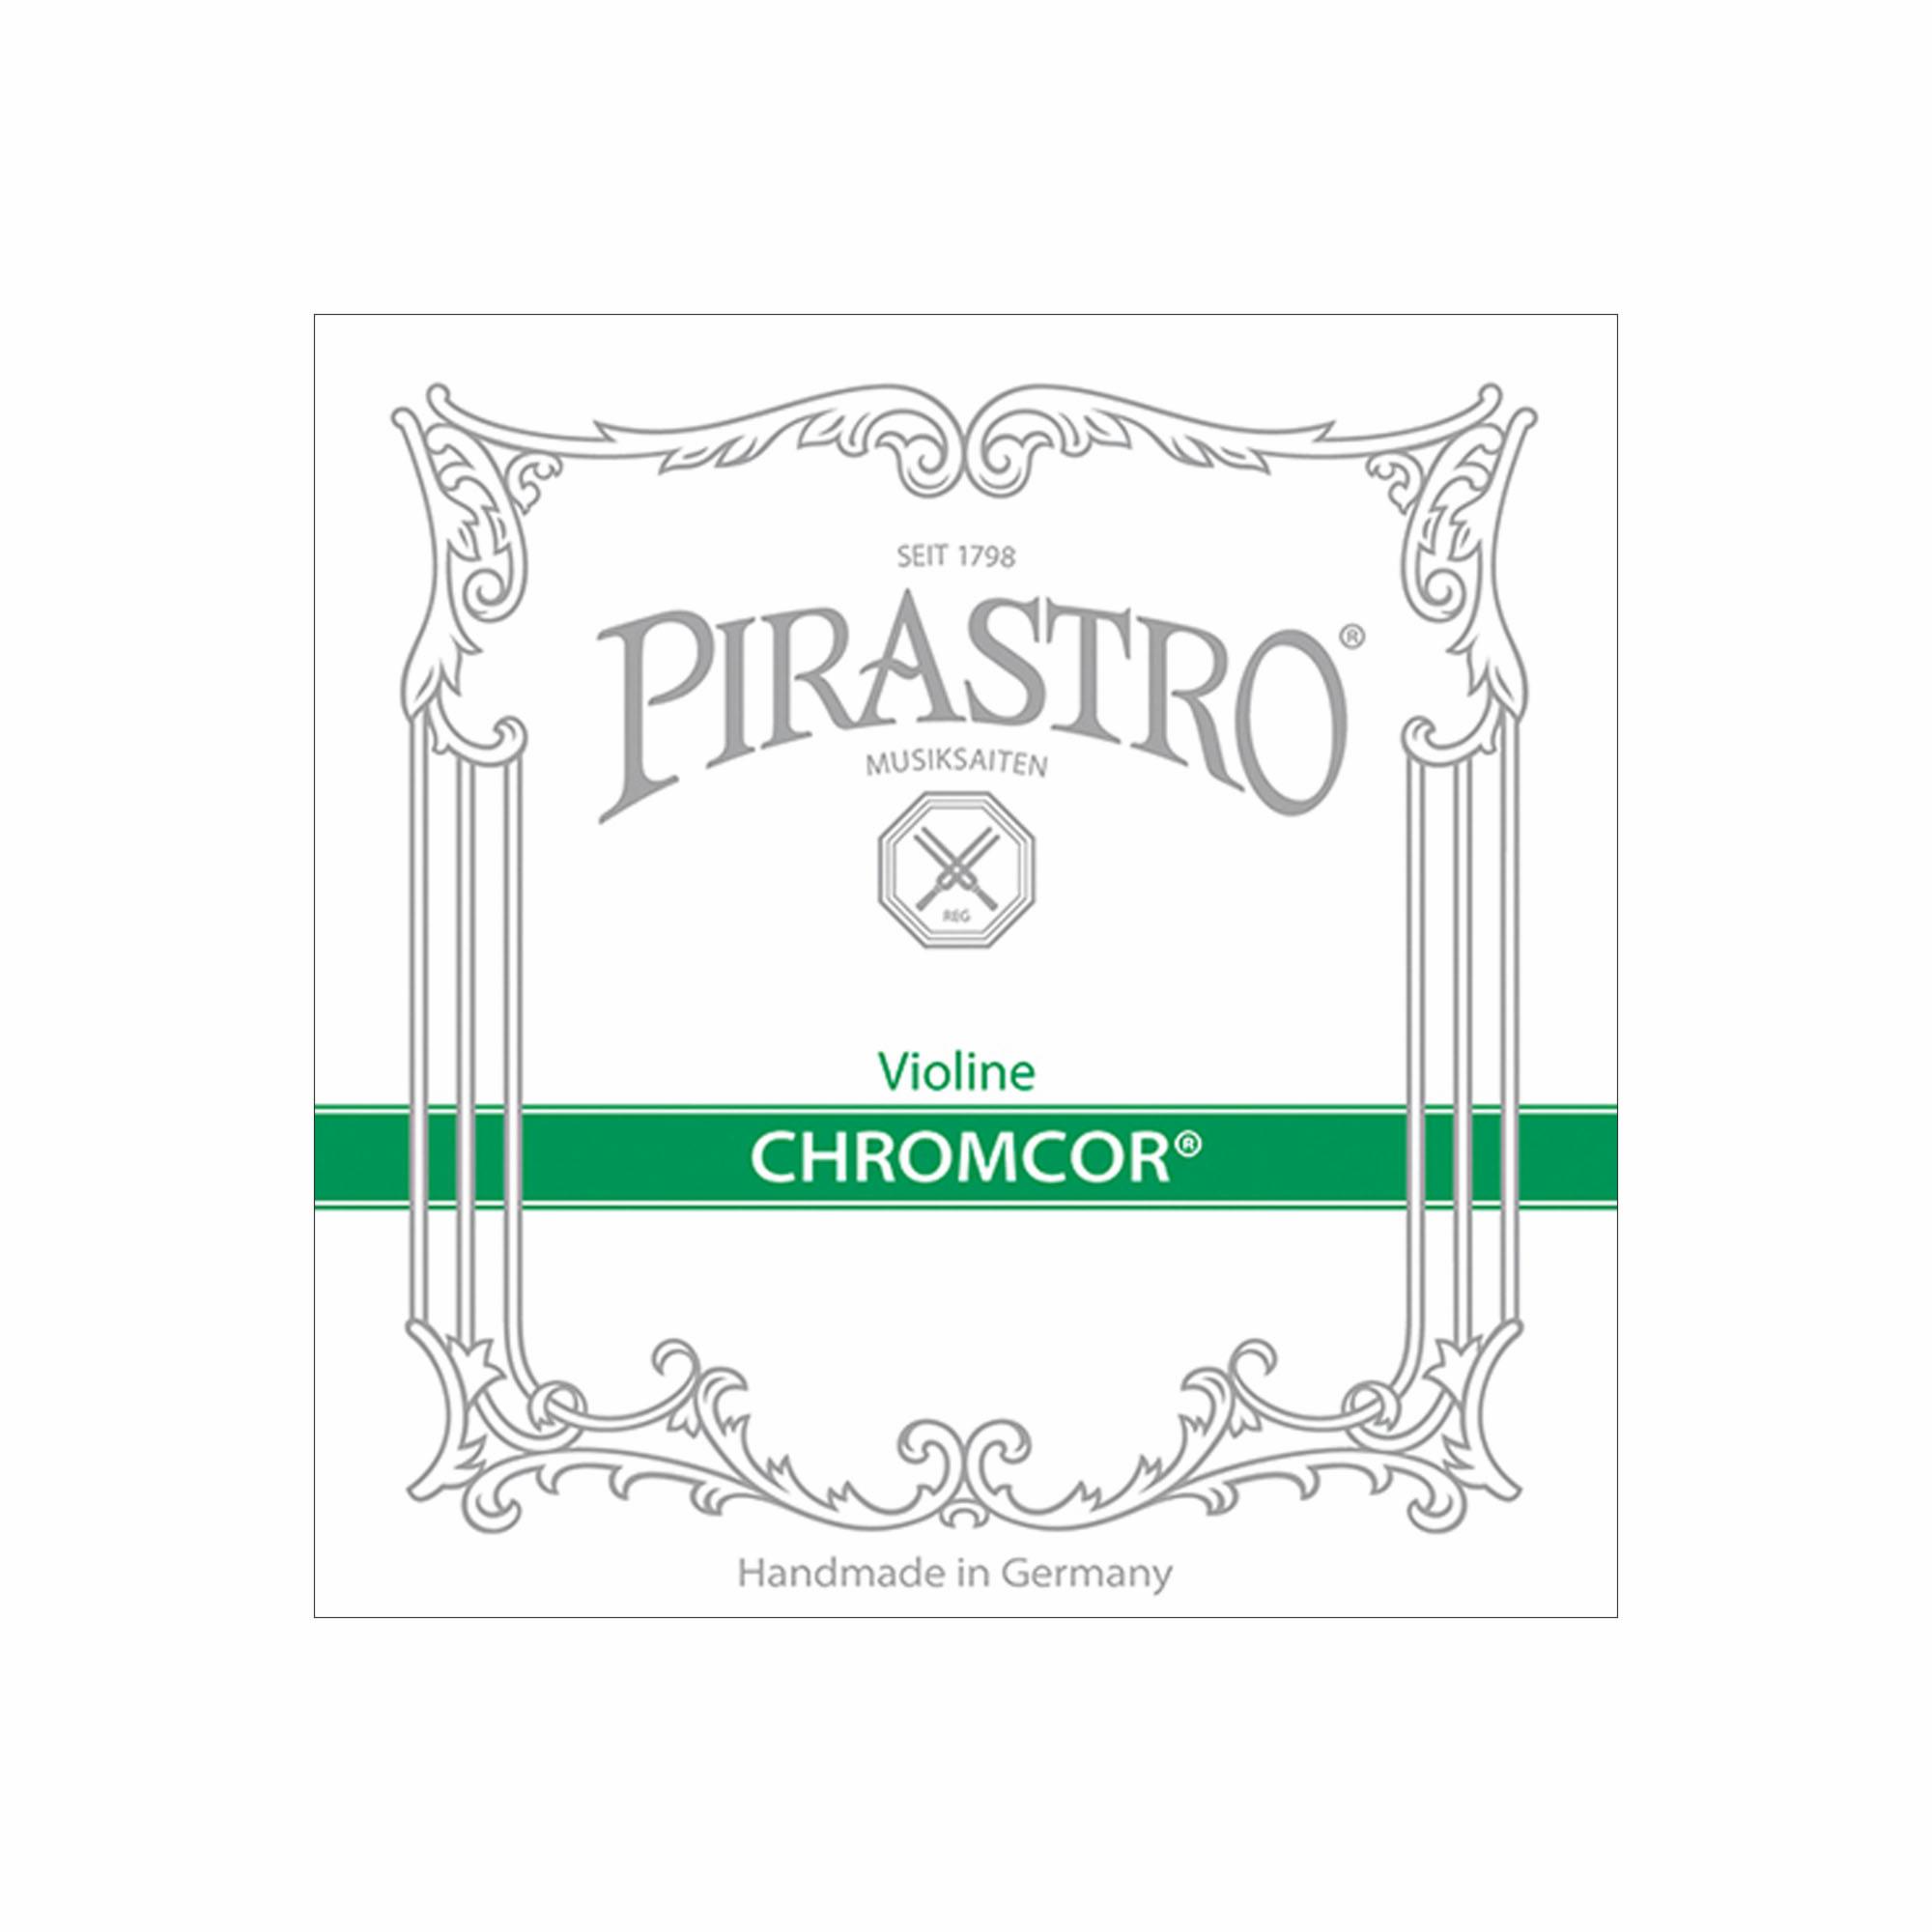 Pirastro Chromcor Violin Strings